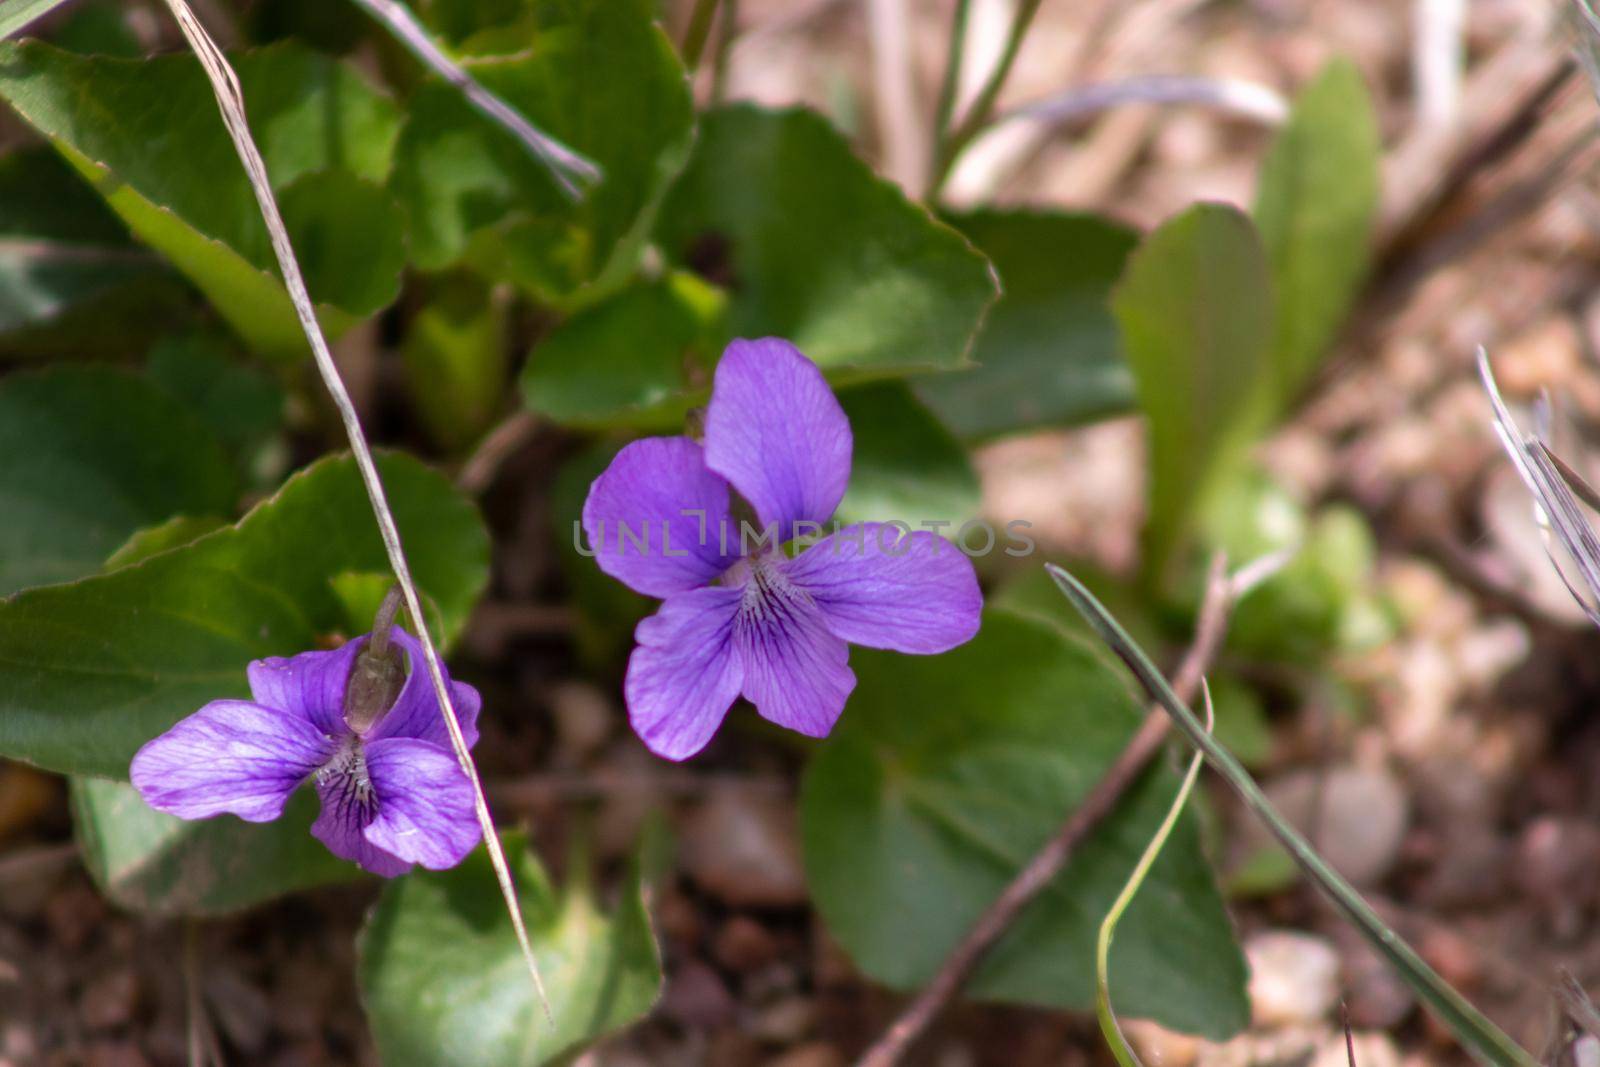 A close up of a purple flower garden by gena_wells